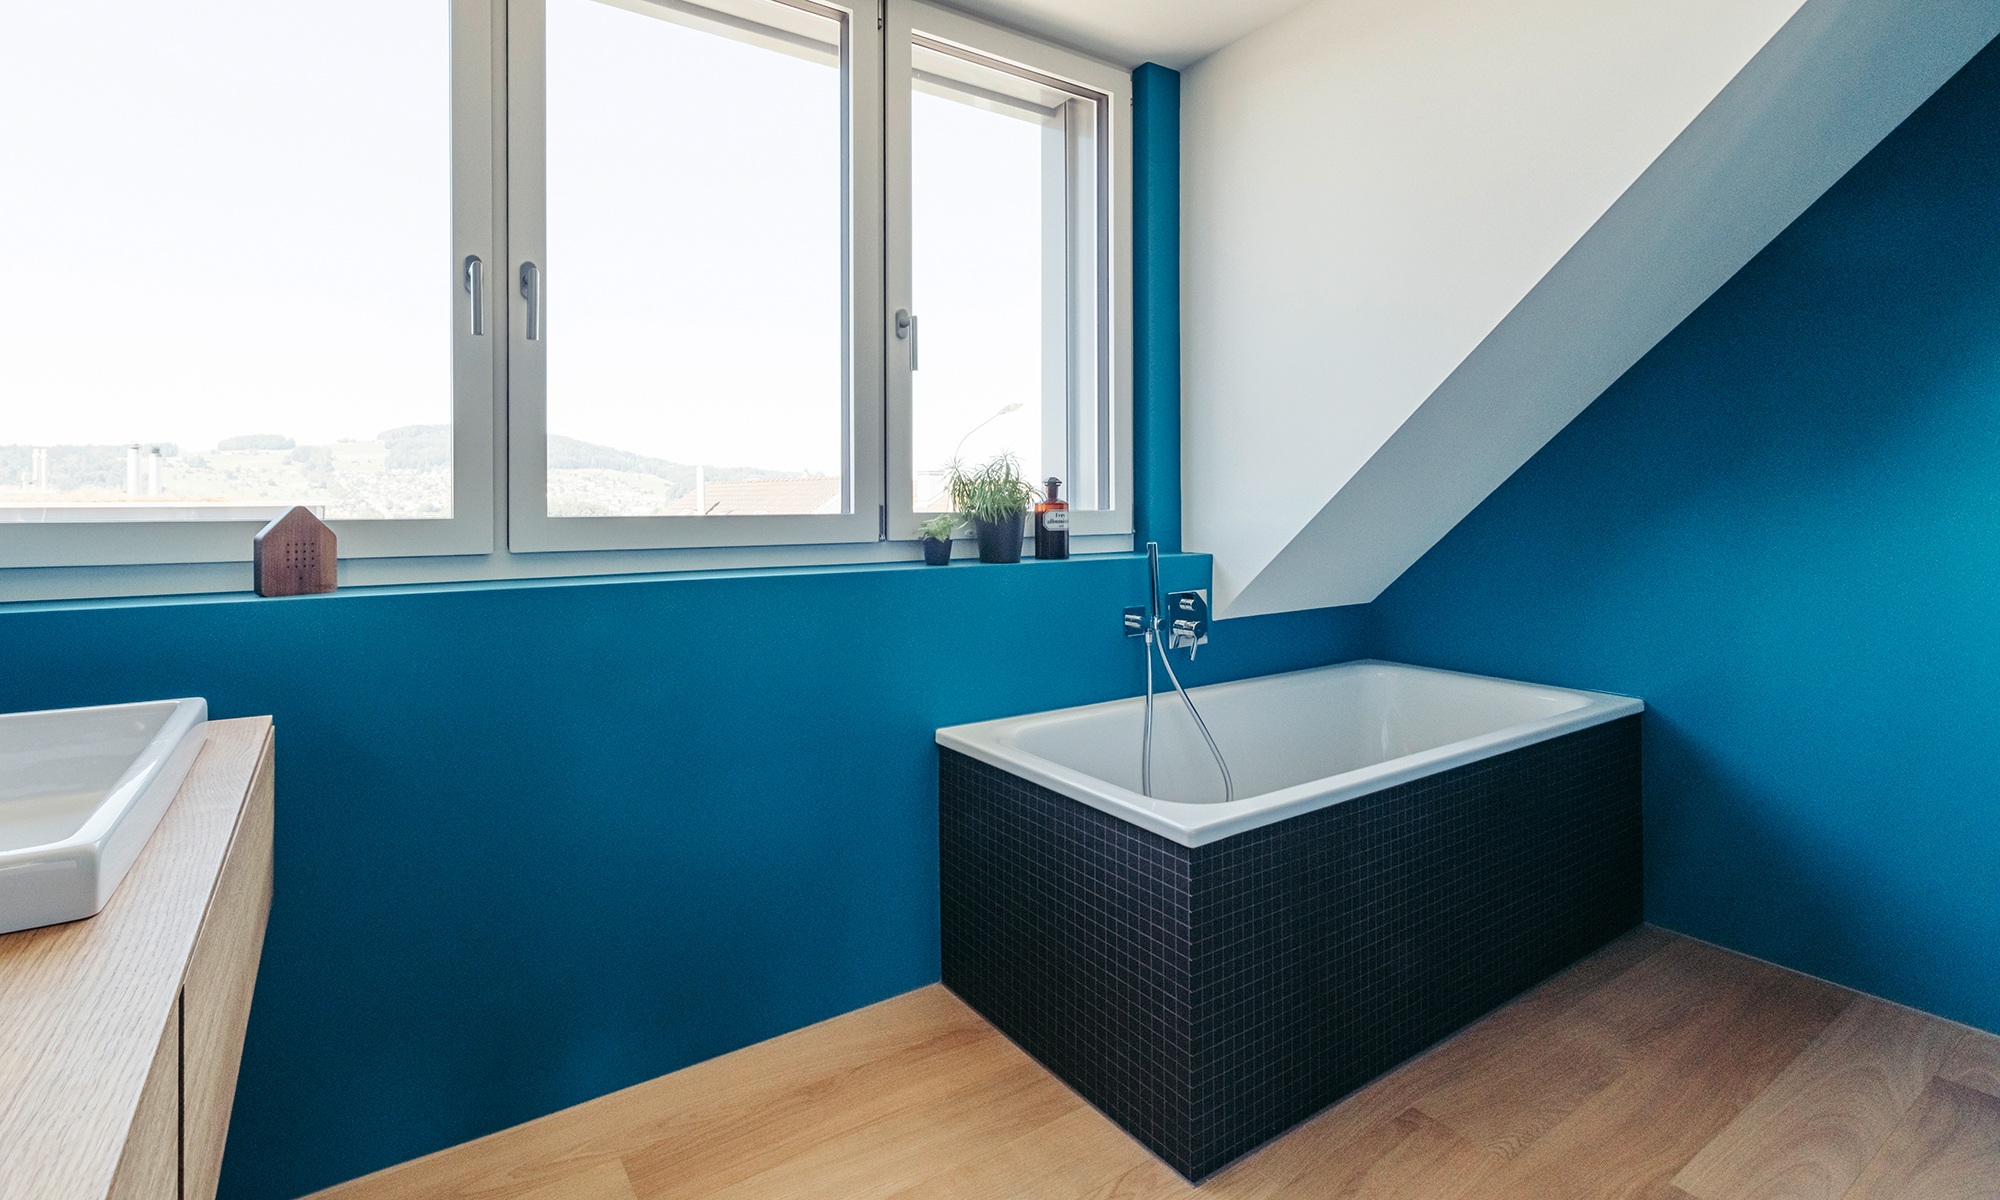 Gesamtansicht des Badezimmers mit blauen Wänden, Holzboden und grosser Fensterfront